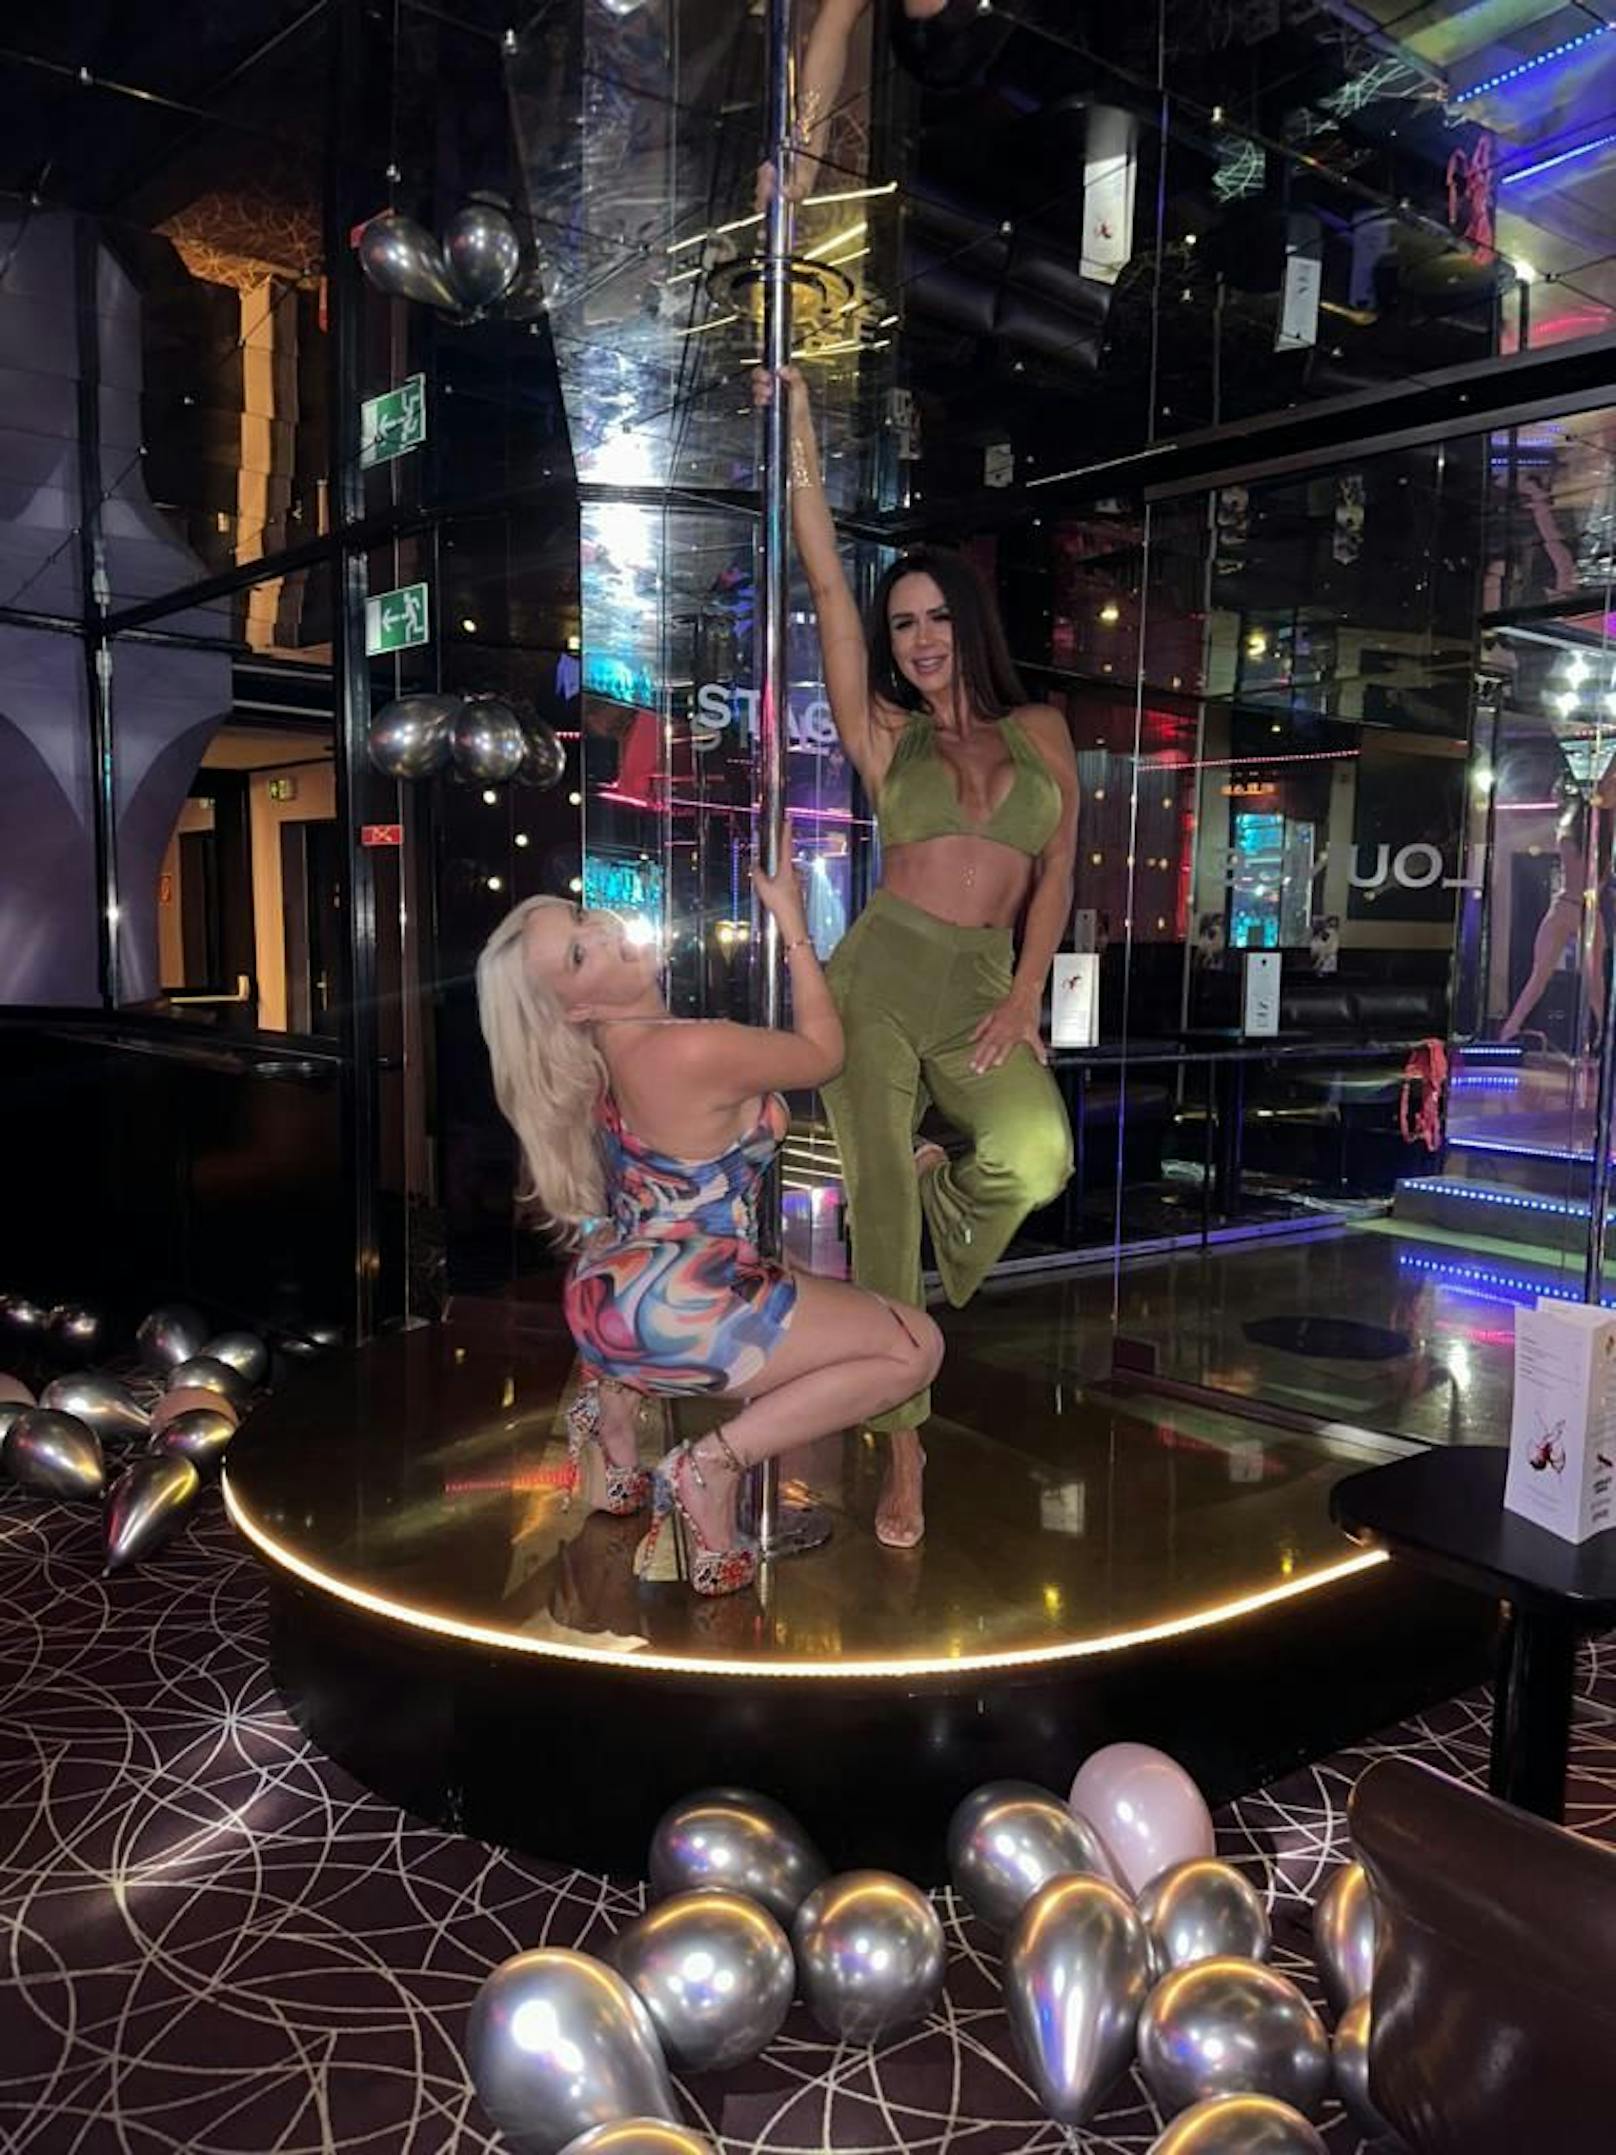 Erotik-Model und Porno-Darstellerin "Miss Jackson" feierte am 13. Oktober ihren 28. Geburtstag in einem Stripclub in der Bundeshauptstadt.